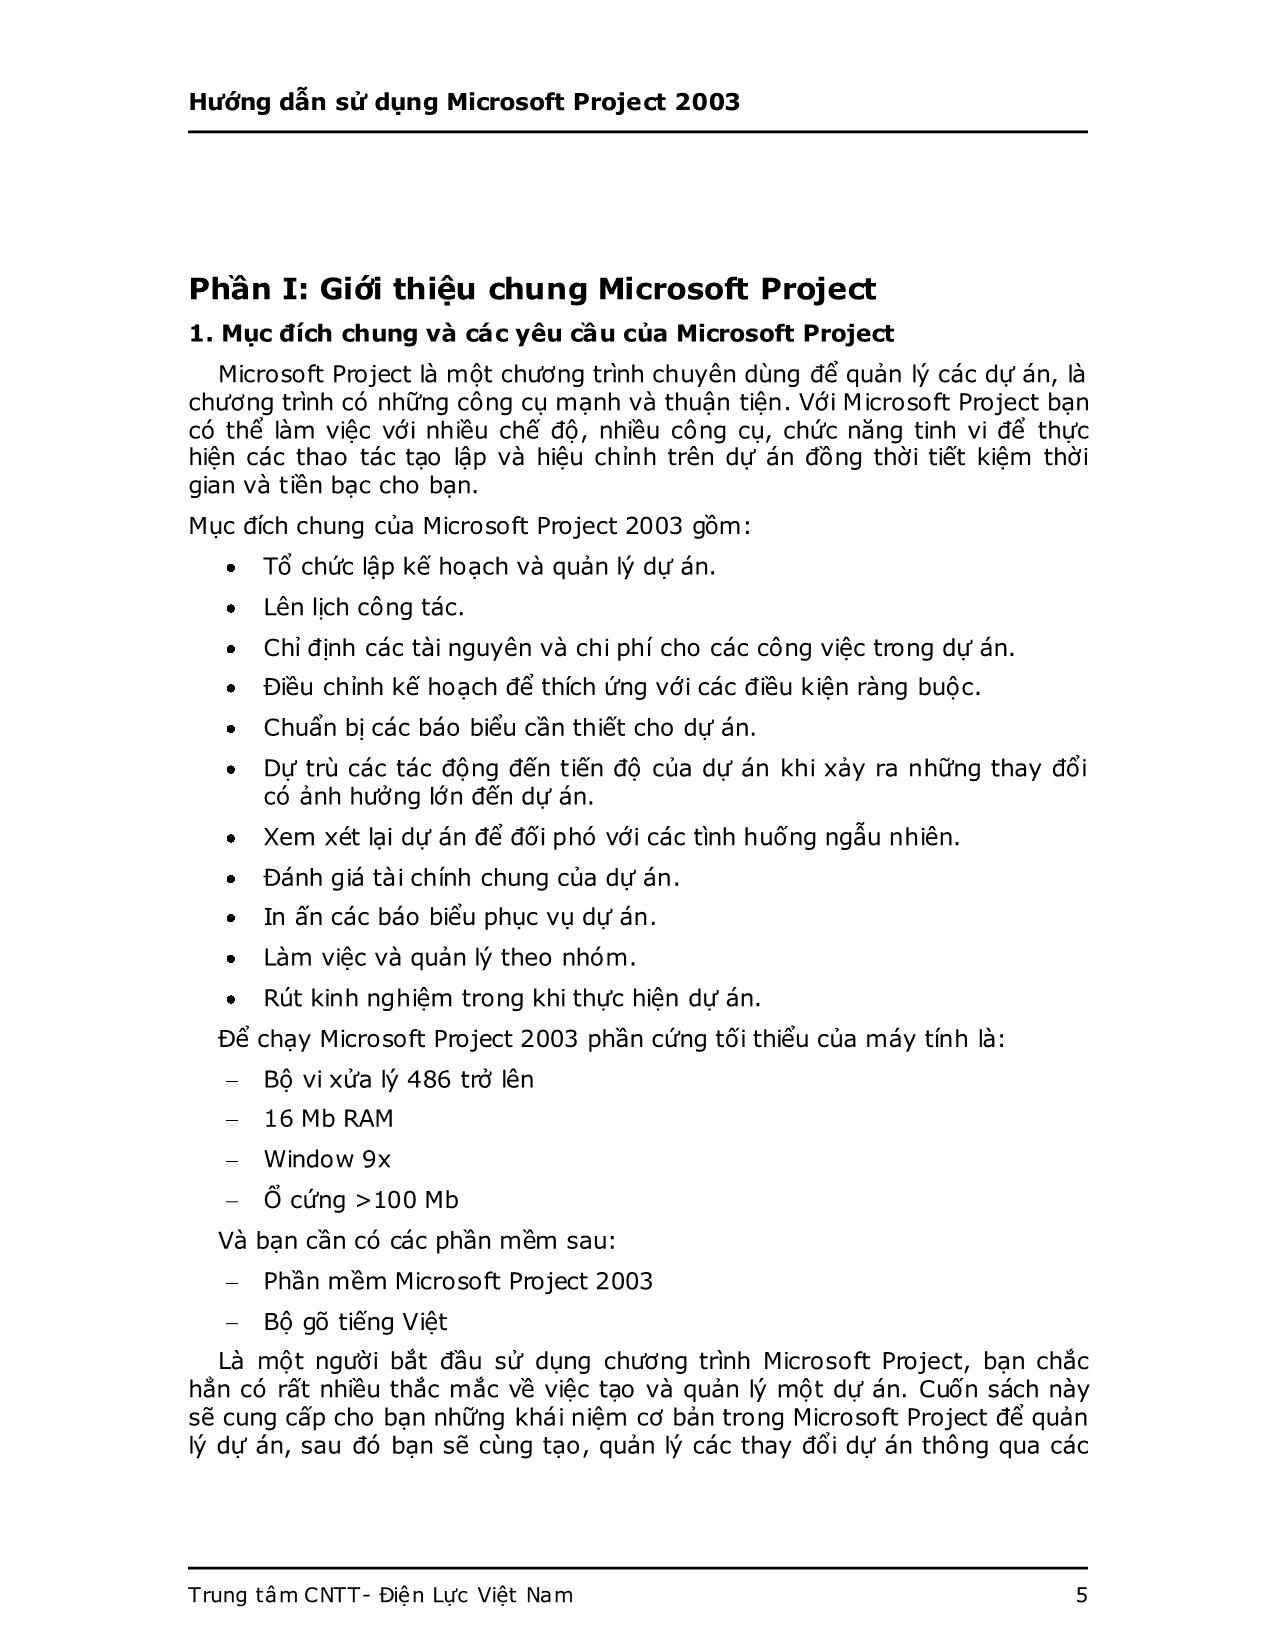 Giáo trình Hướng dẫn sử dụng Microsoft Project 2003 trang 5